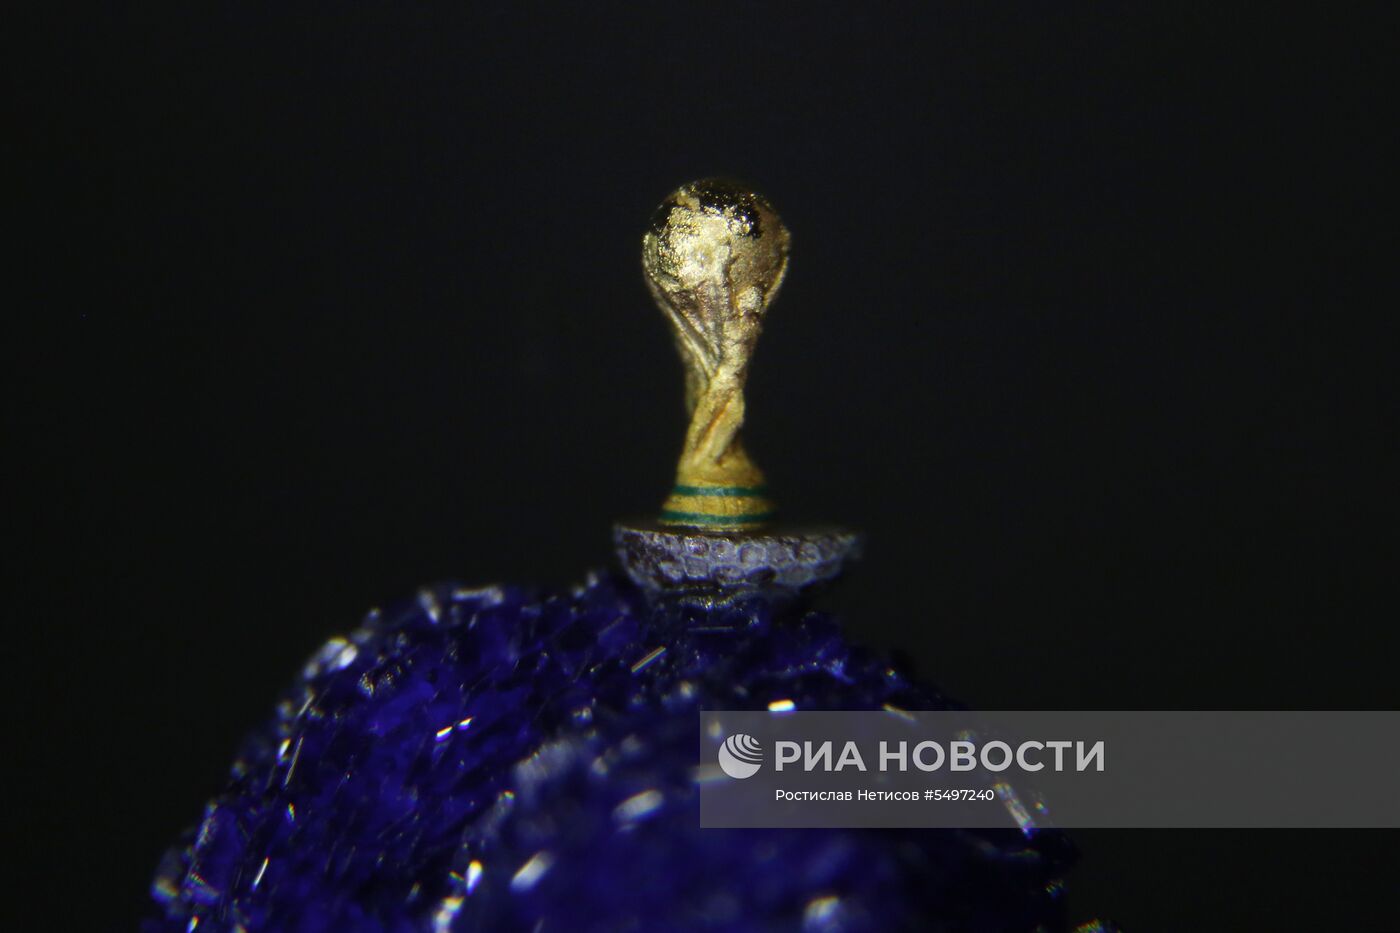 Новосибирский мастер изготовил копию кубка ЧМ по футболу на срезе макового зернышка